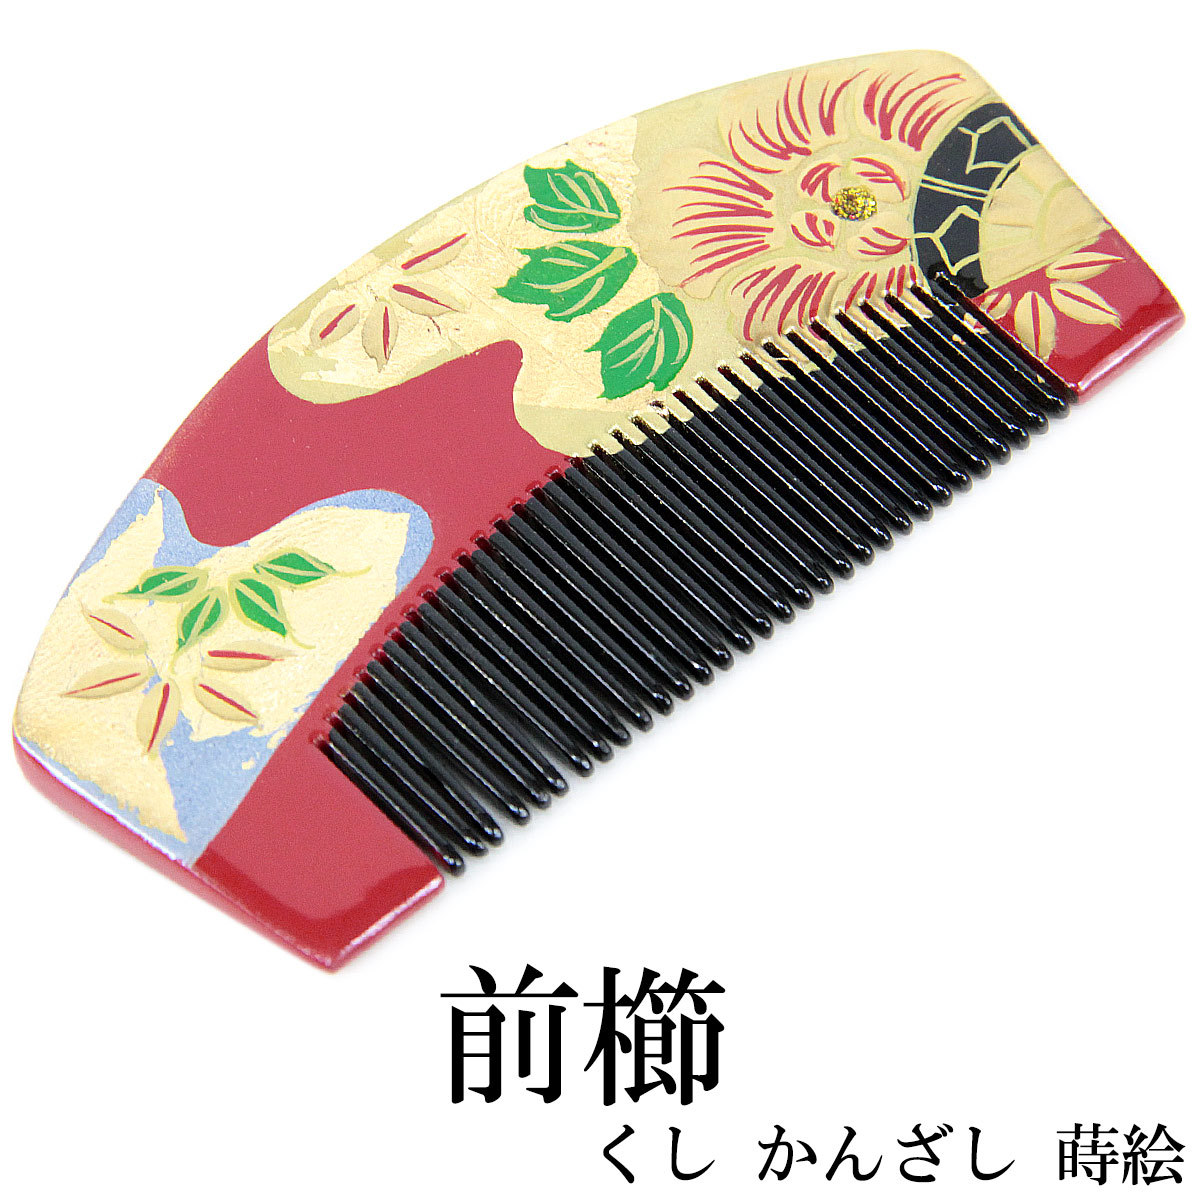 櫛かんざし -93- 前櫛 半京 髪飾り 蒔絵 赤 牡丹 : b-kzs-93 : あおい 